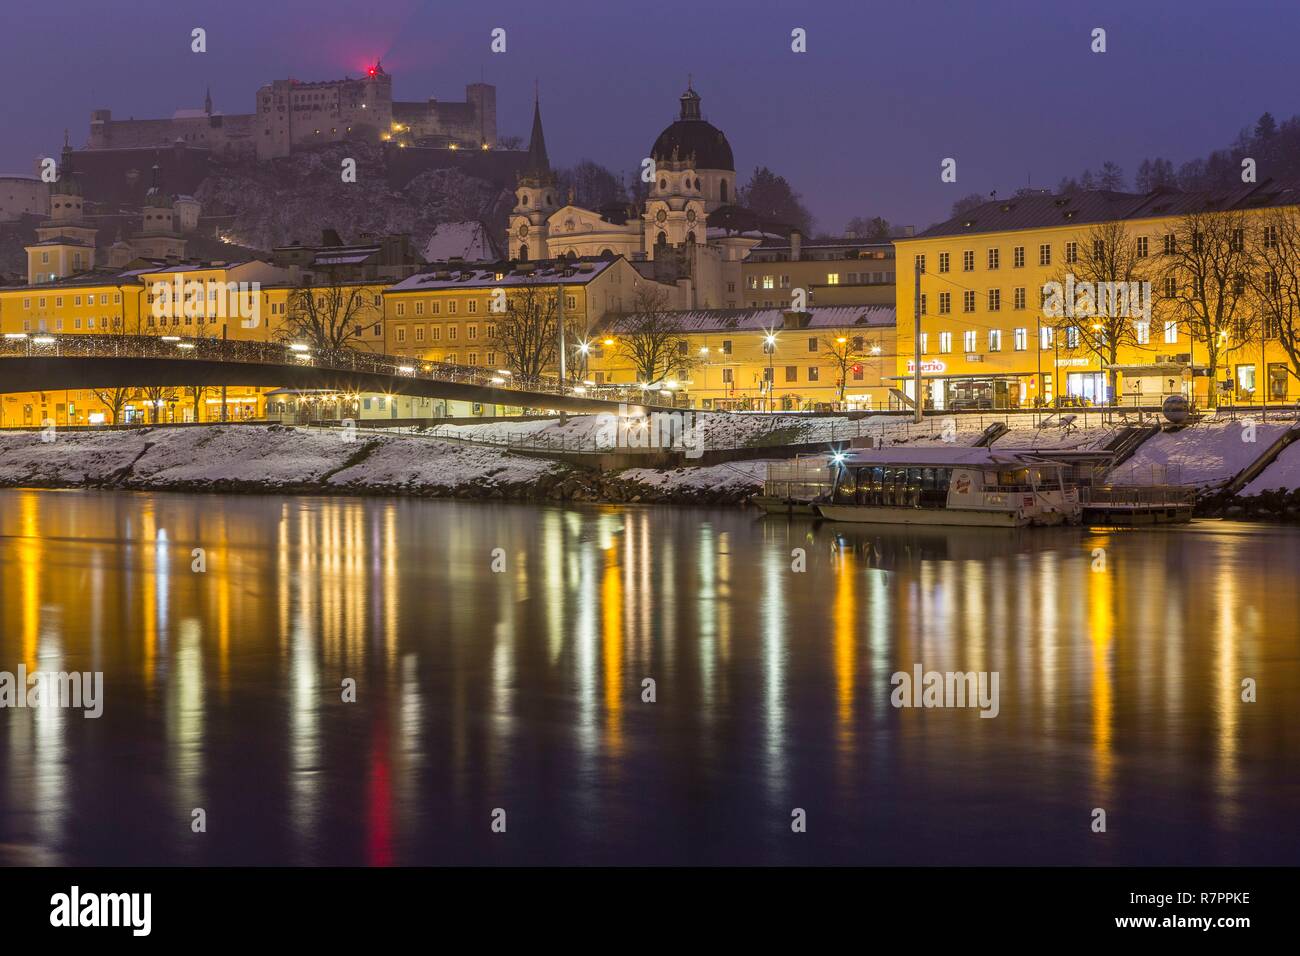 Austria, Salzburgo, centro histórico catalogado como Patrimonio Mundial por la UNESCO, el casco antiguo (Altstadt) y el Castillo de Hohensalzburg Foto de stock